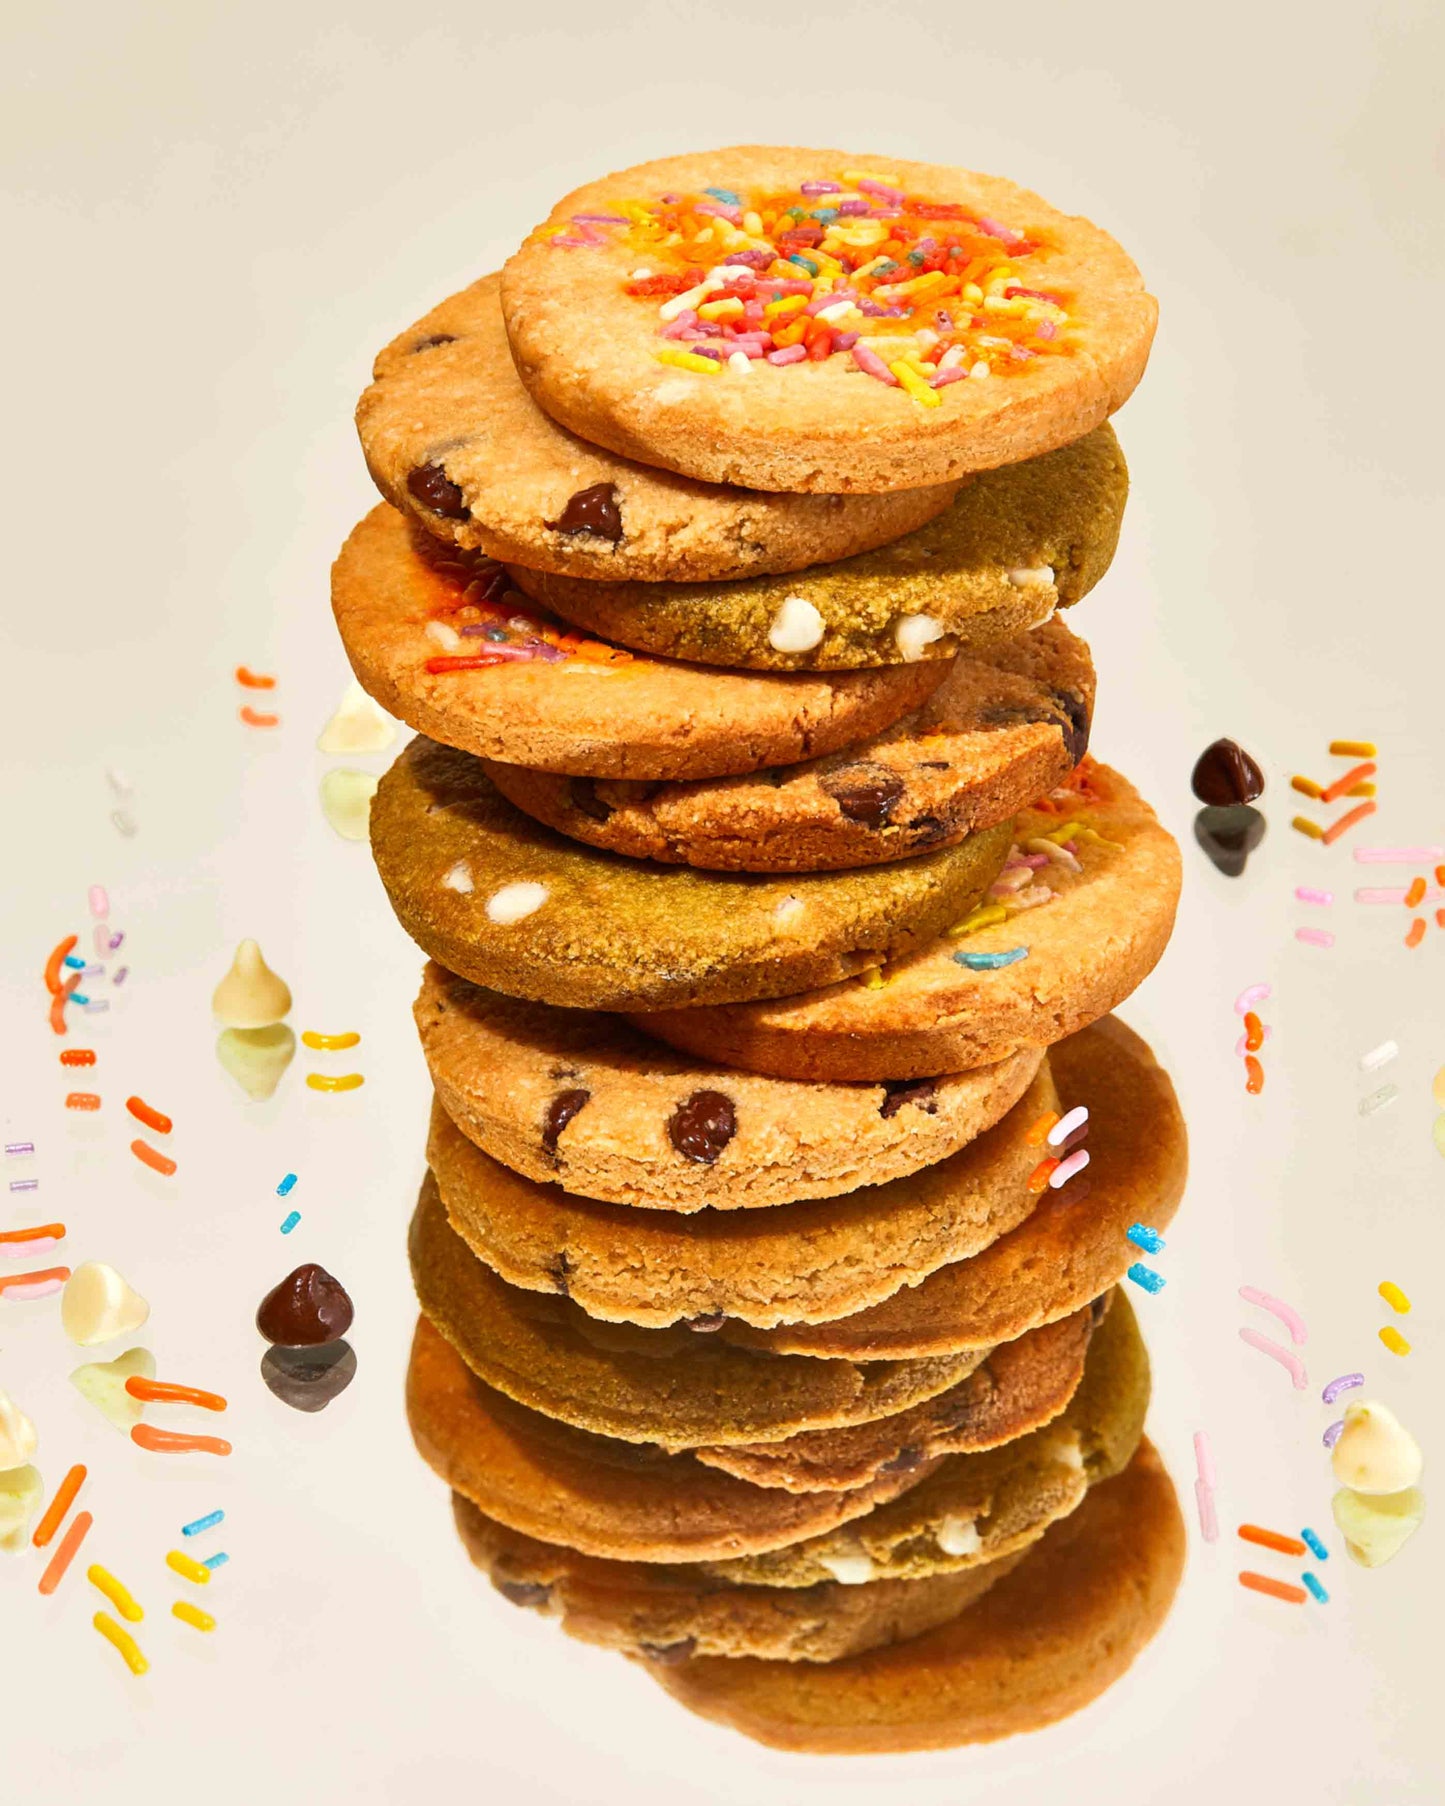 Rainbow Sprinkles Cookies